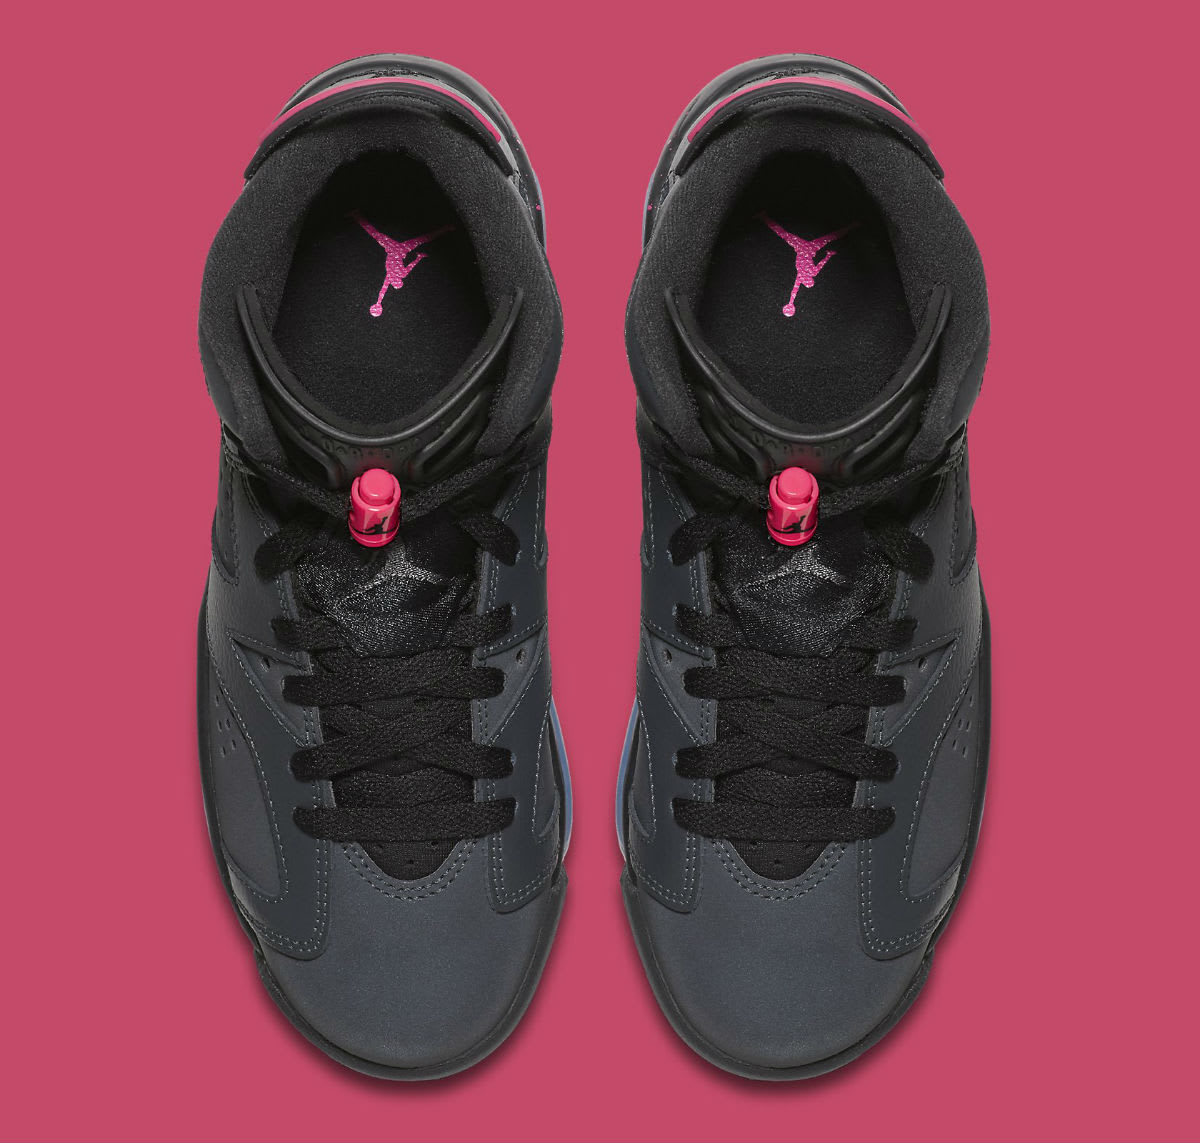 black and pink jordan 6s